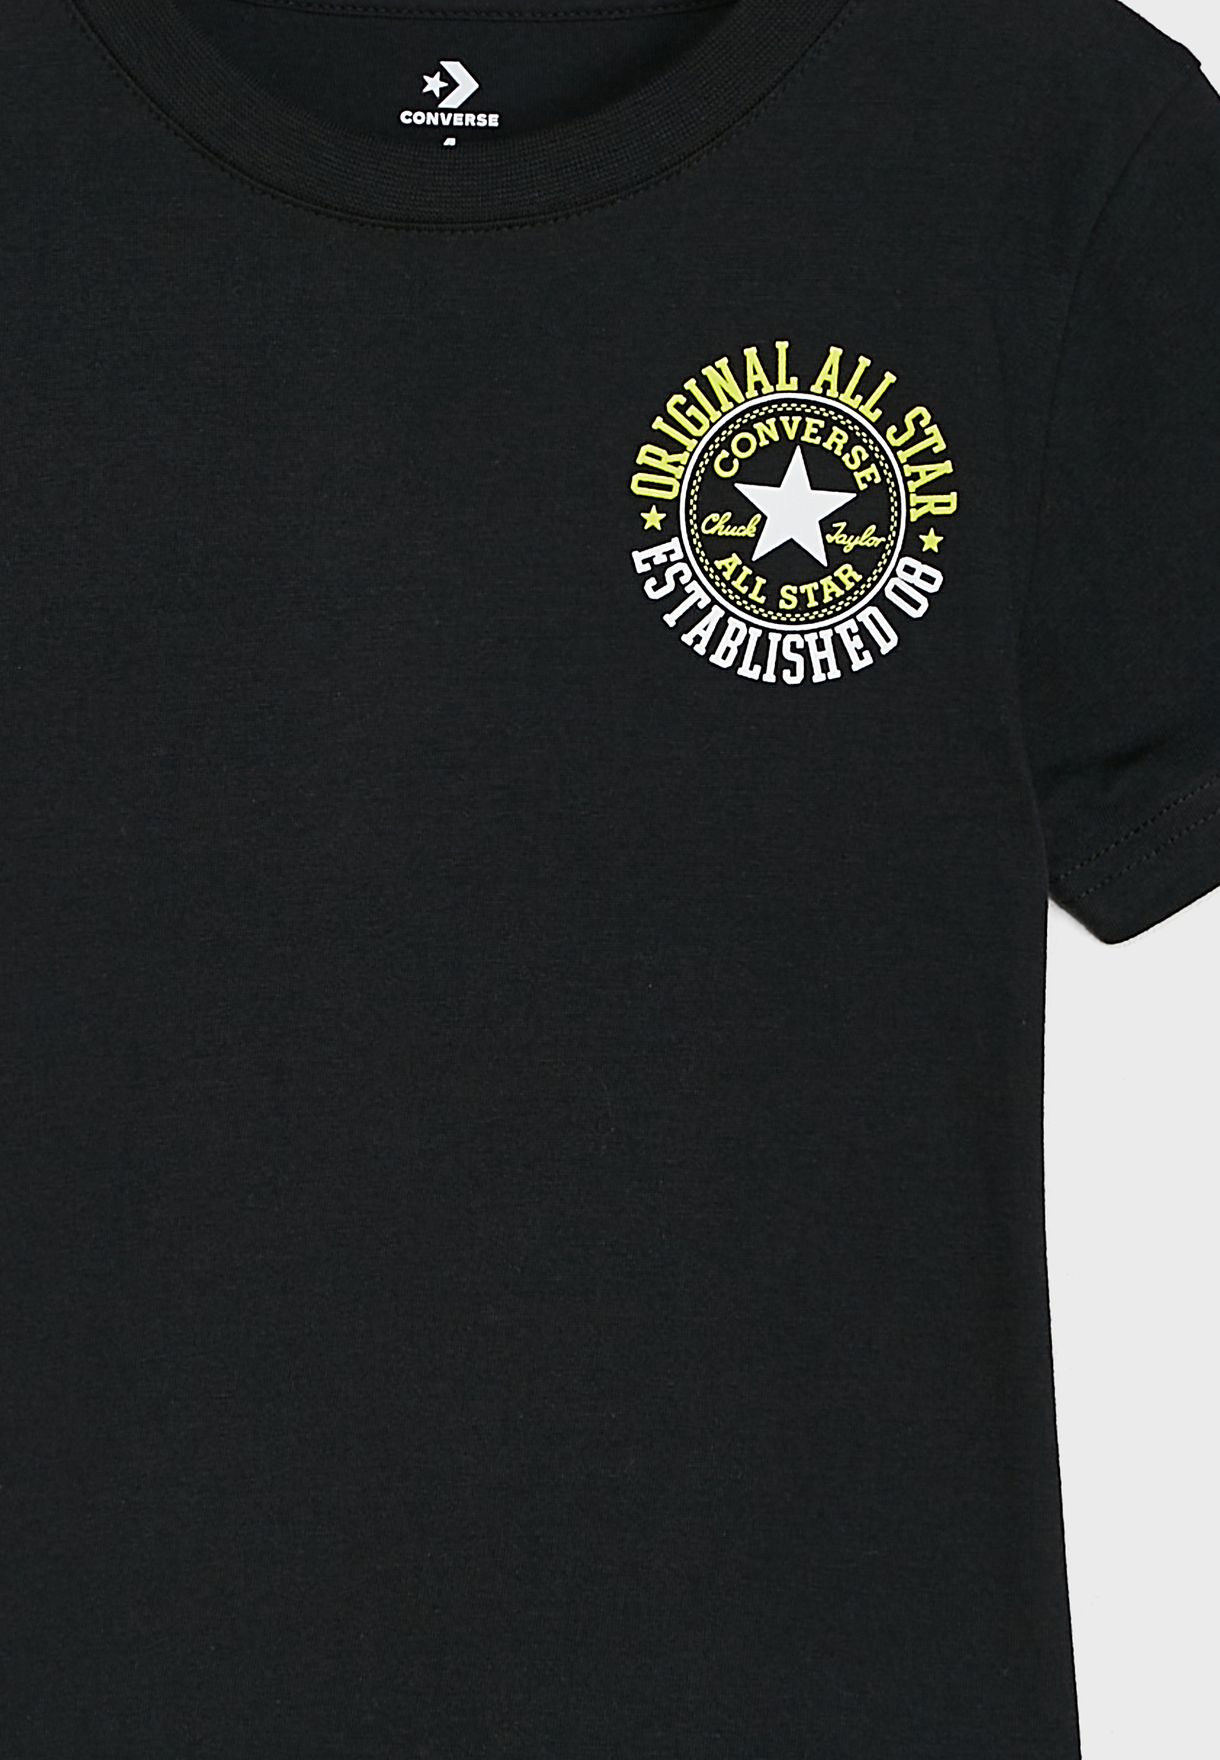 Kids All Star Brand T-Shirt